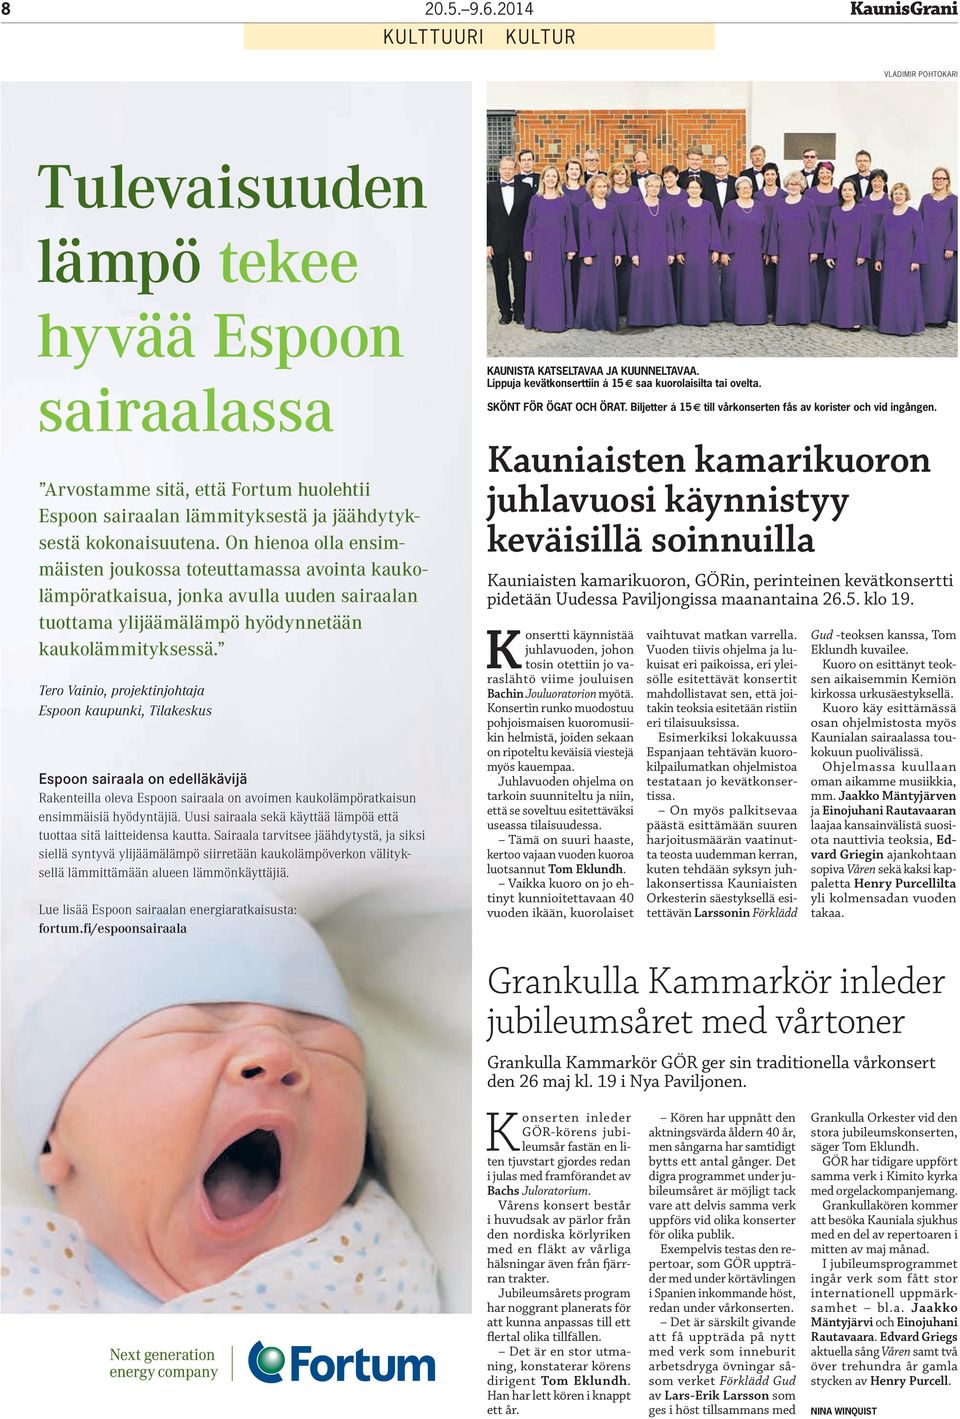 Tero Vainio, projektinjohtaja Espoon kaupunki, Tilakeskus Espoon sairaala on edelläkävijä Rakenteilla oleva Espoon sairaala on avoimen kaukolämpö ratkaisun ensimmäisiä hyödyntäjiä.